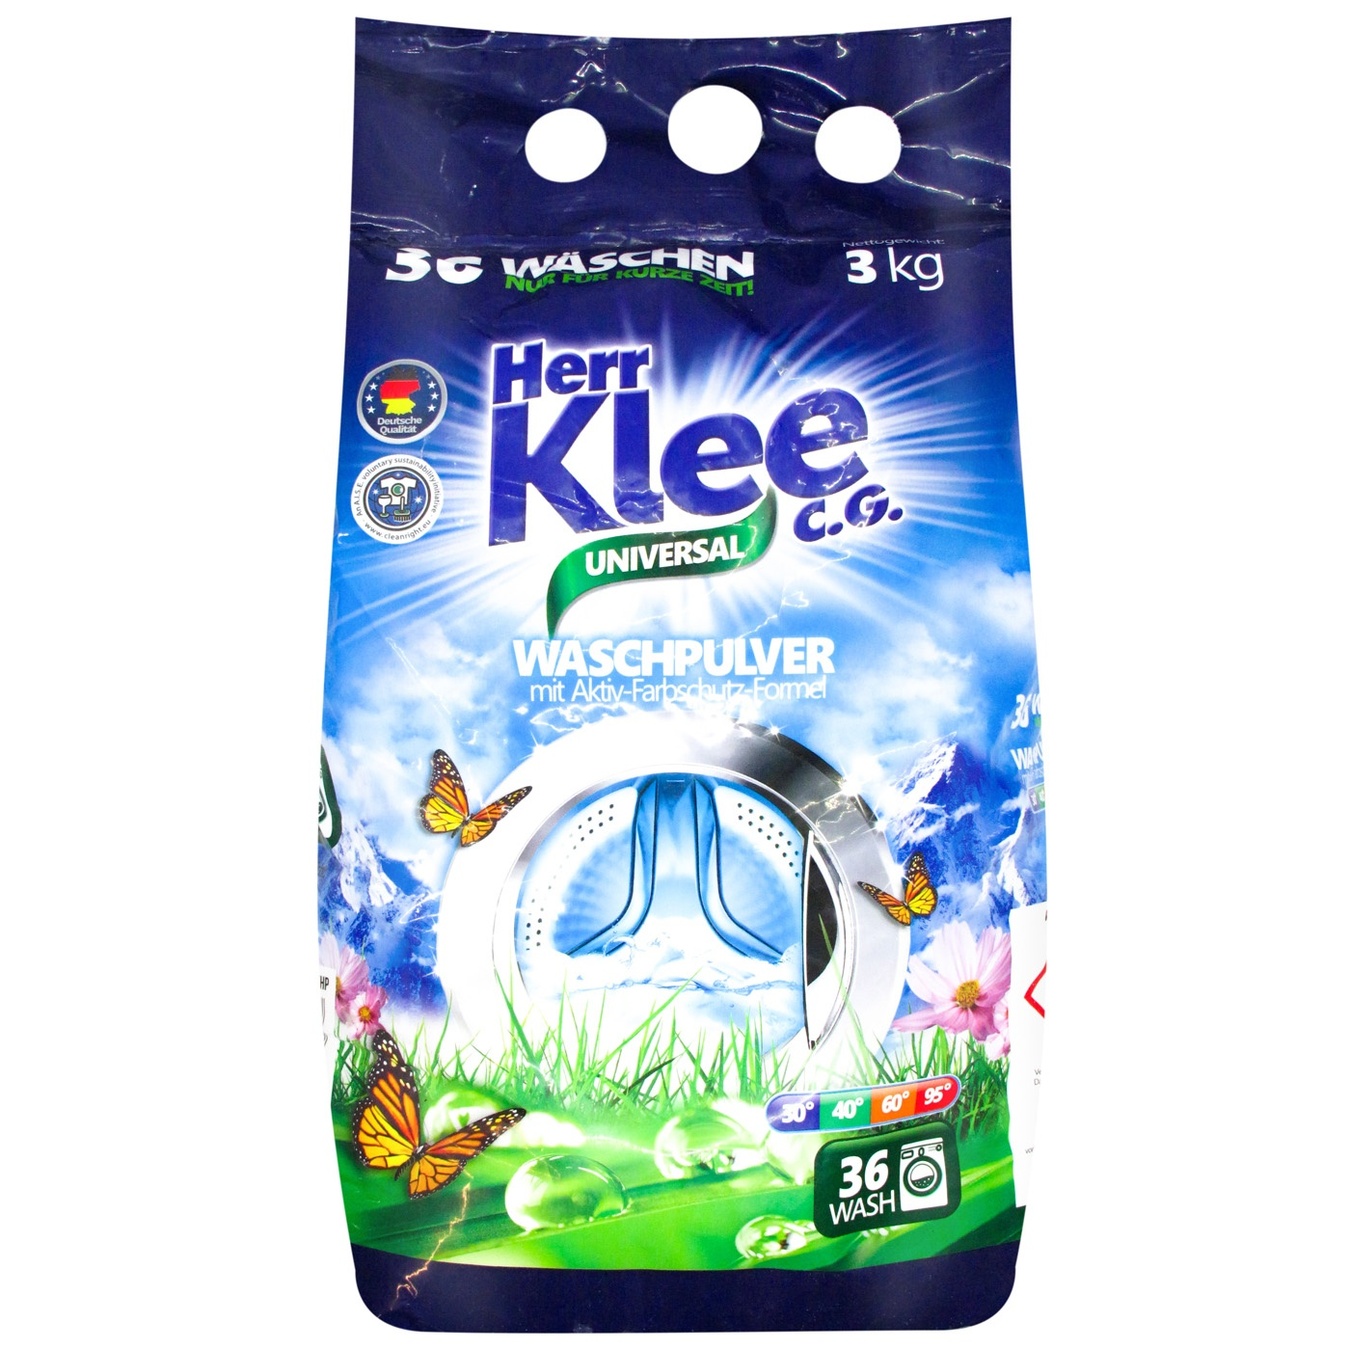 Klee Washing powder Univers machine 3 kg